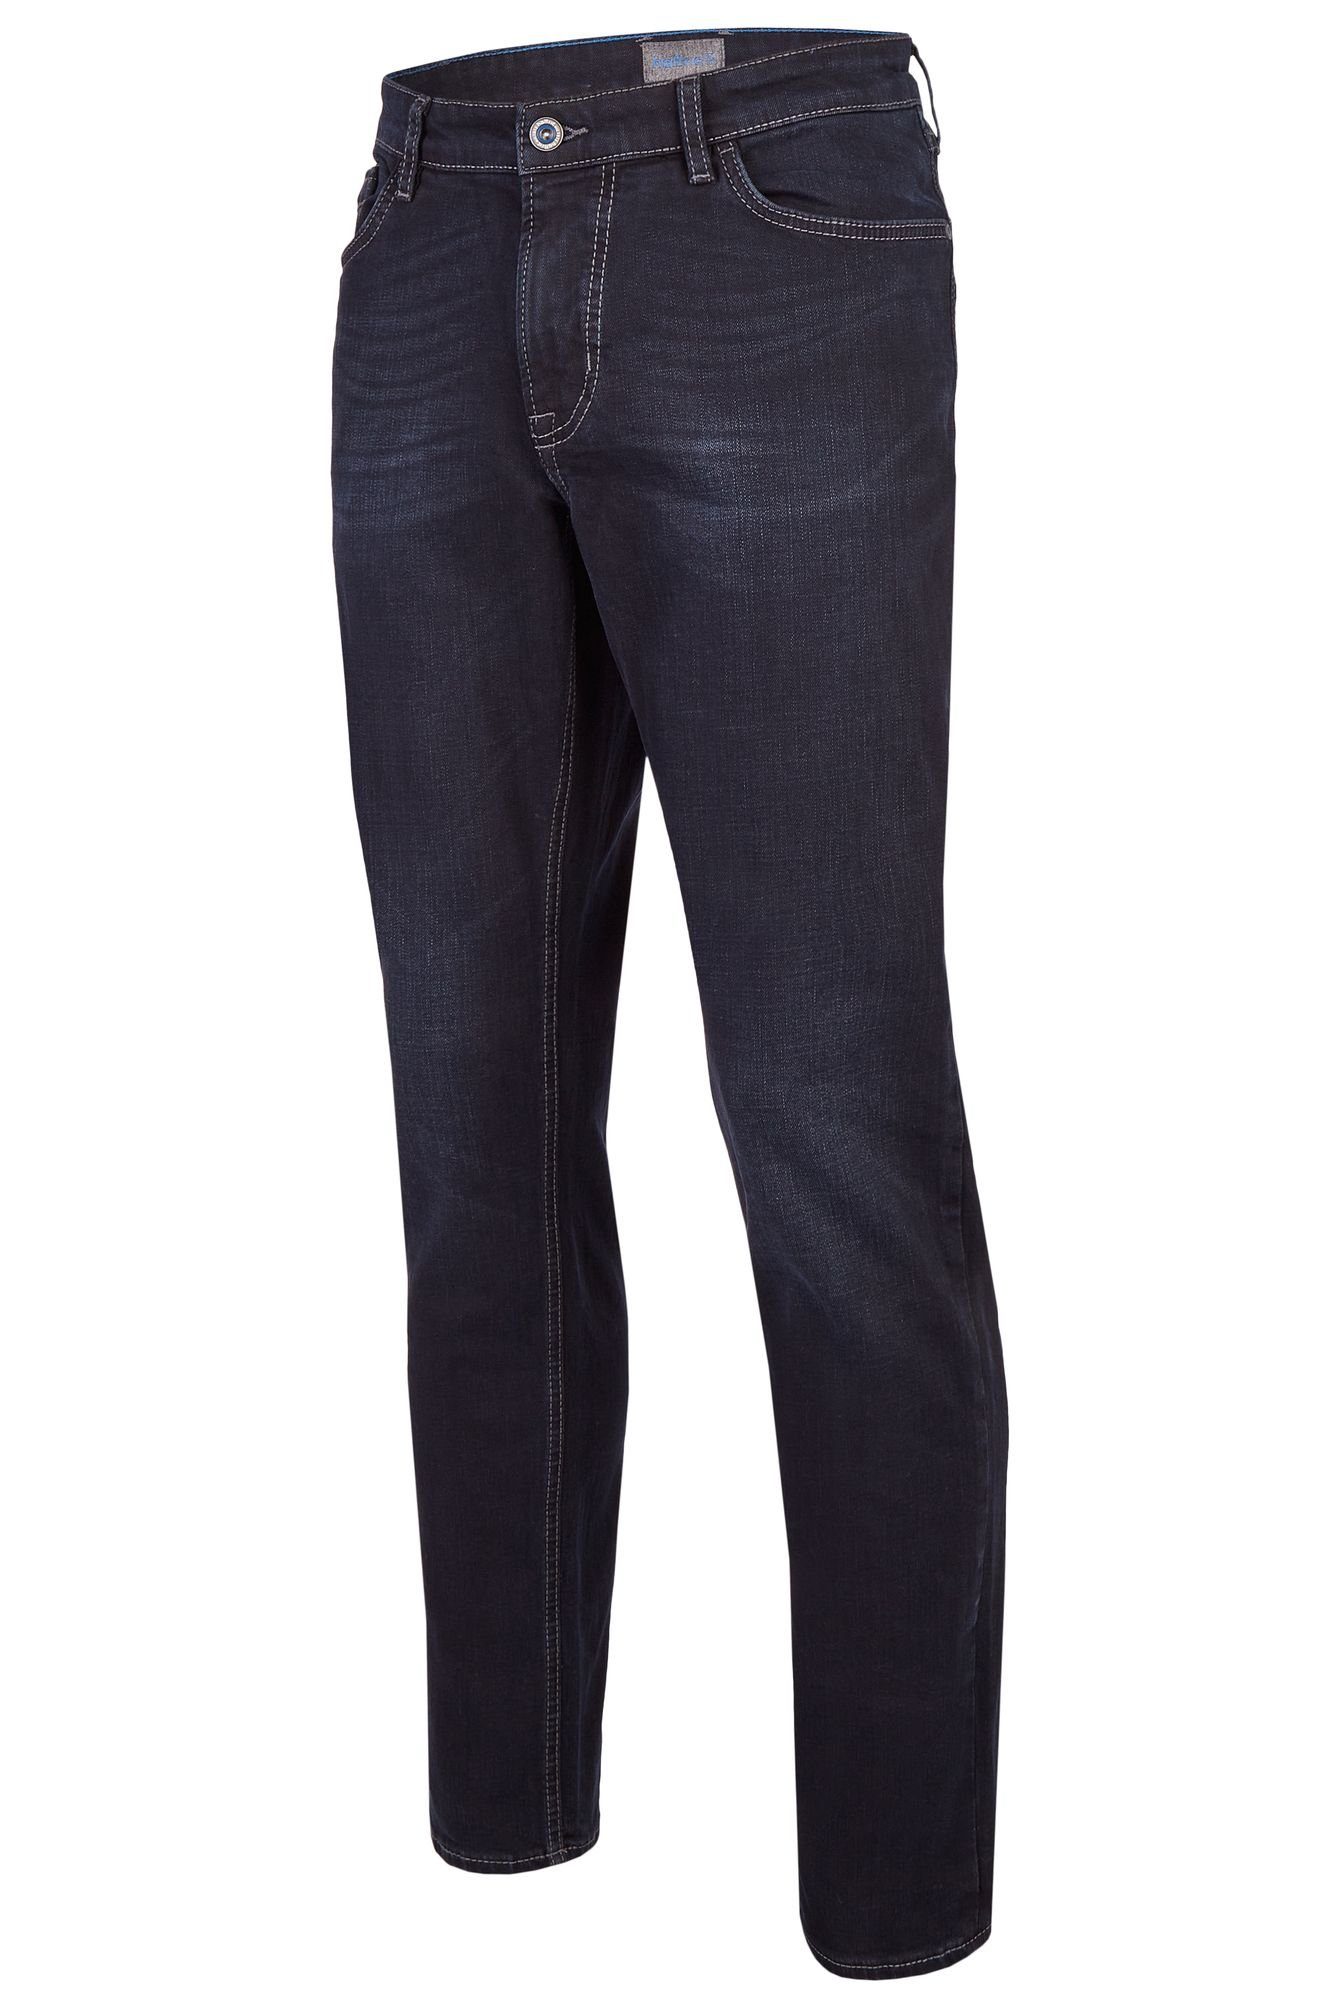 Hattric 5-Pocket-Jeans 688465-9285 black (89) blue